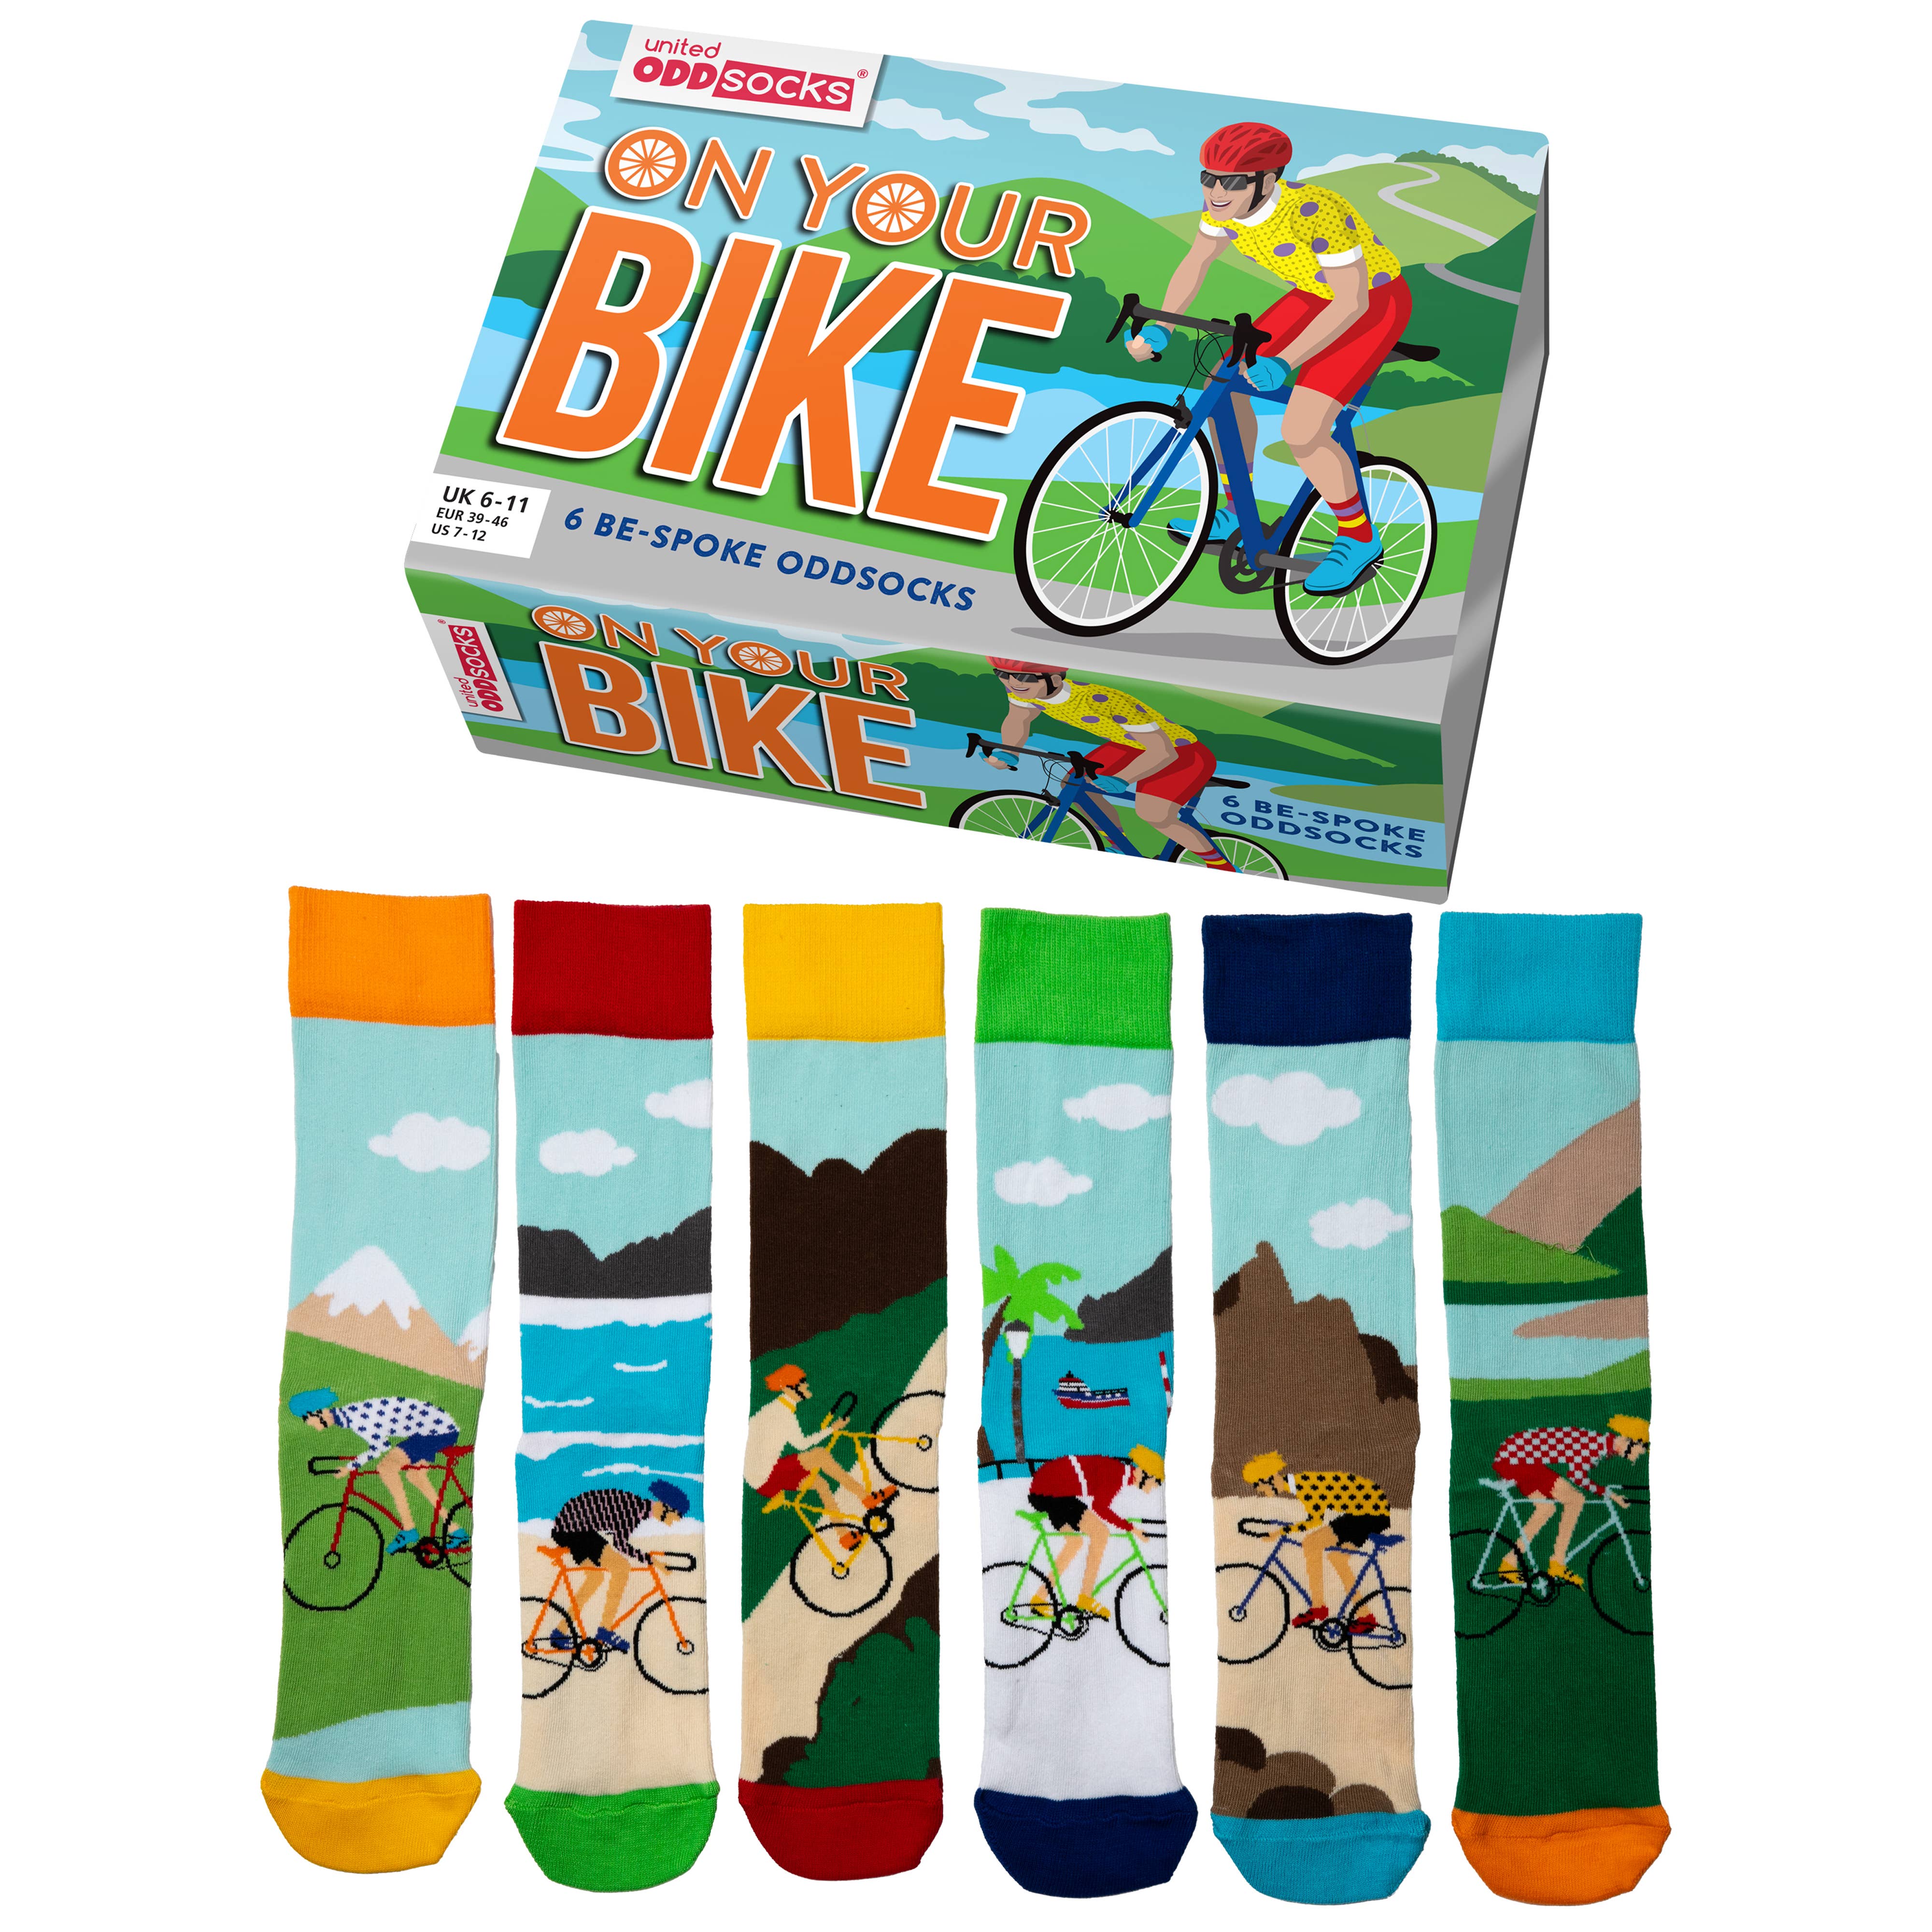 United Oddsocks 6 Odd Socks Gift Box - UK 6-11 EUR 39-46 US 7-12 - On Your Bike